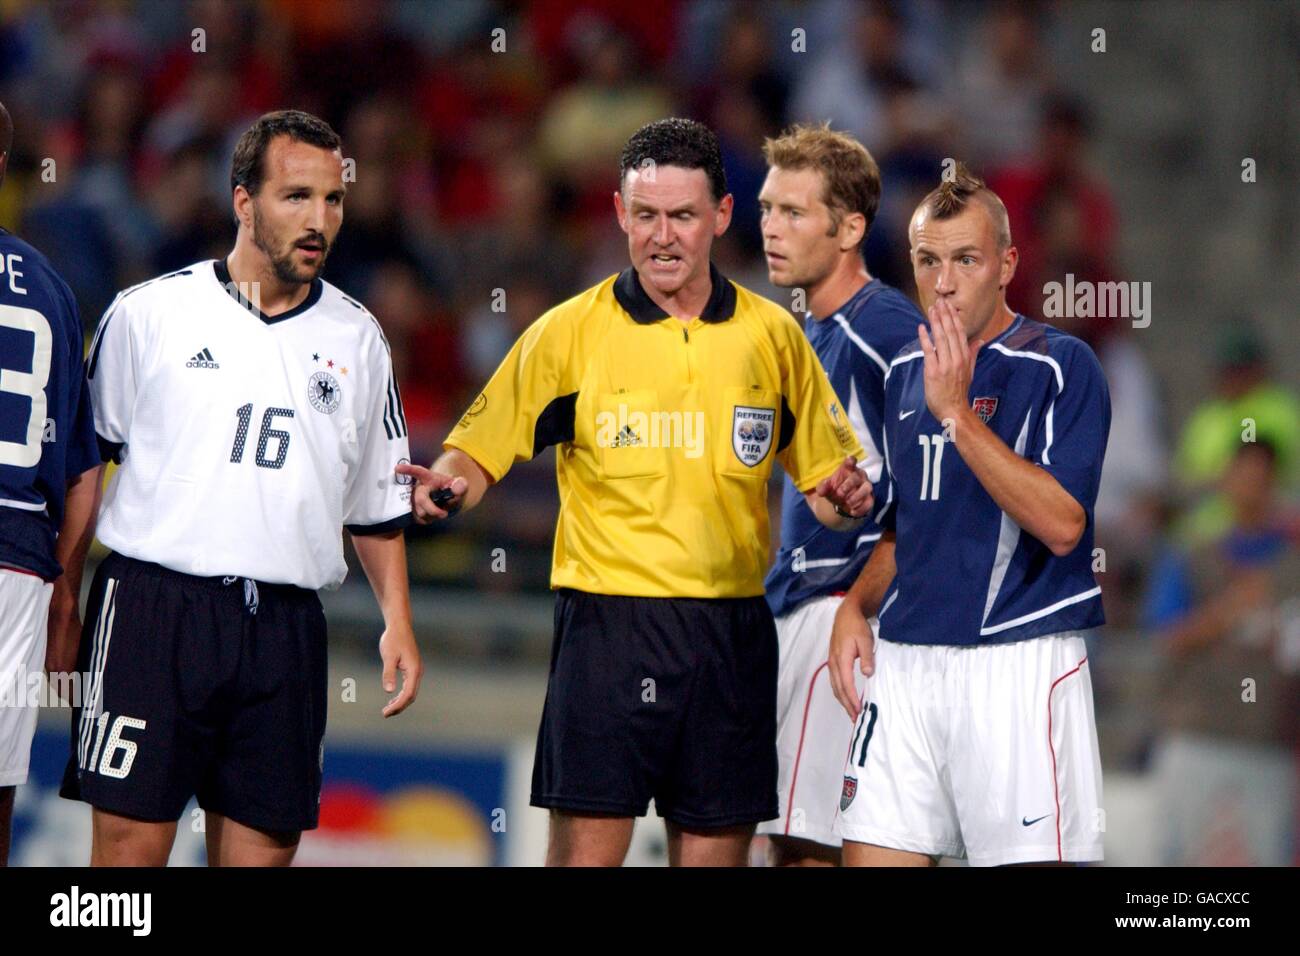 Football - coupe du monde de la FIFA 2002 - quart de finale - Allemagne contre Etats-Unis.L'arbitre Hugh Dallas calme les choses entre le Clint Mathis(r) des États-Unis et le Jen Jeremies(l) de l'Allemagne. Banque D'Images